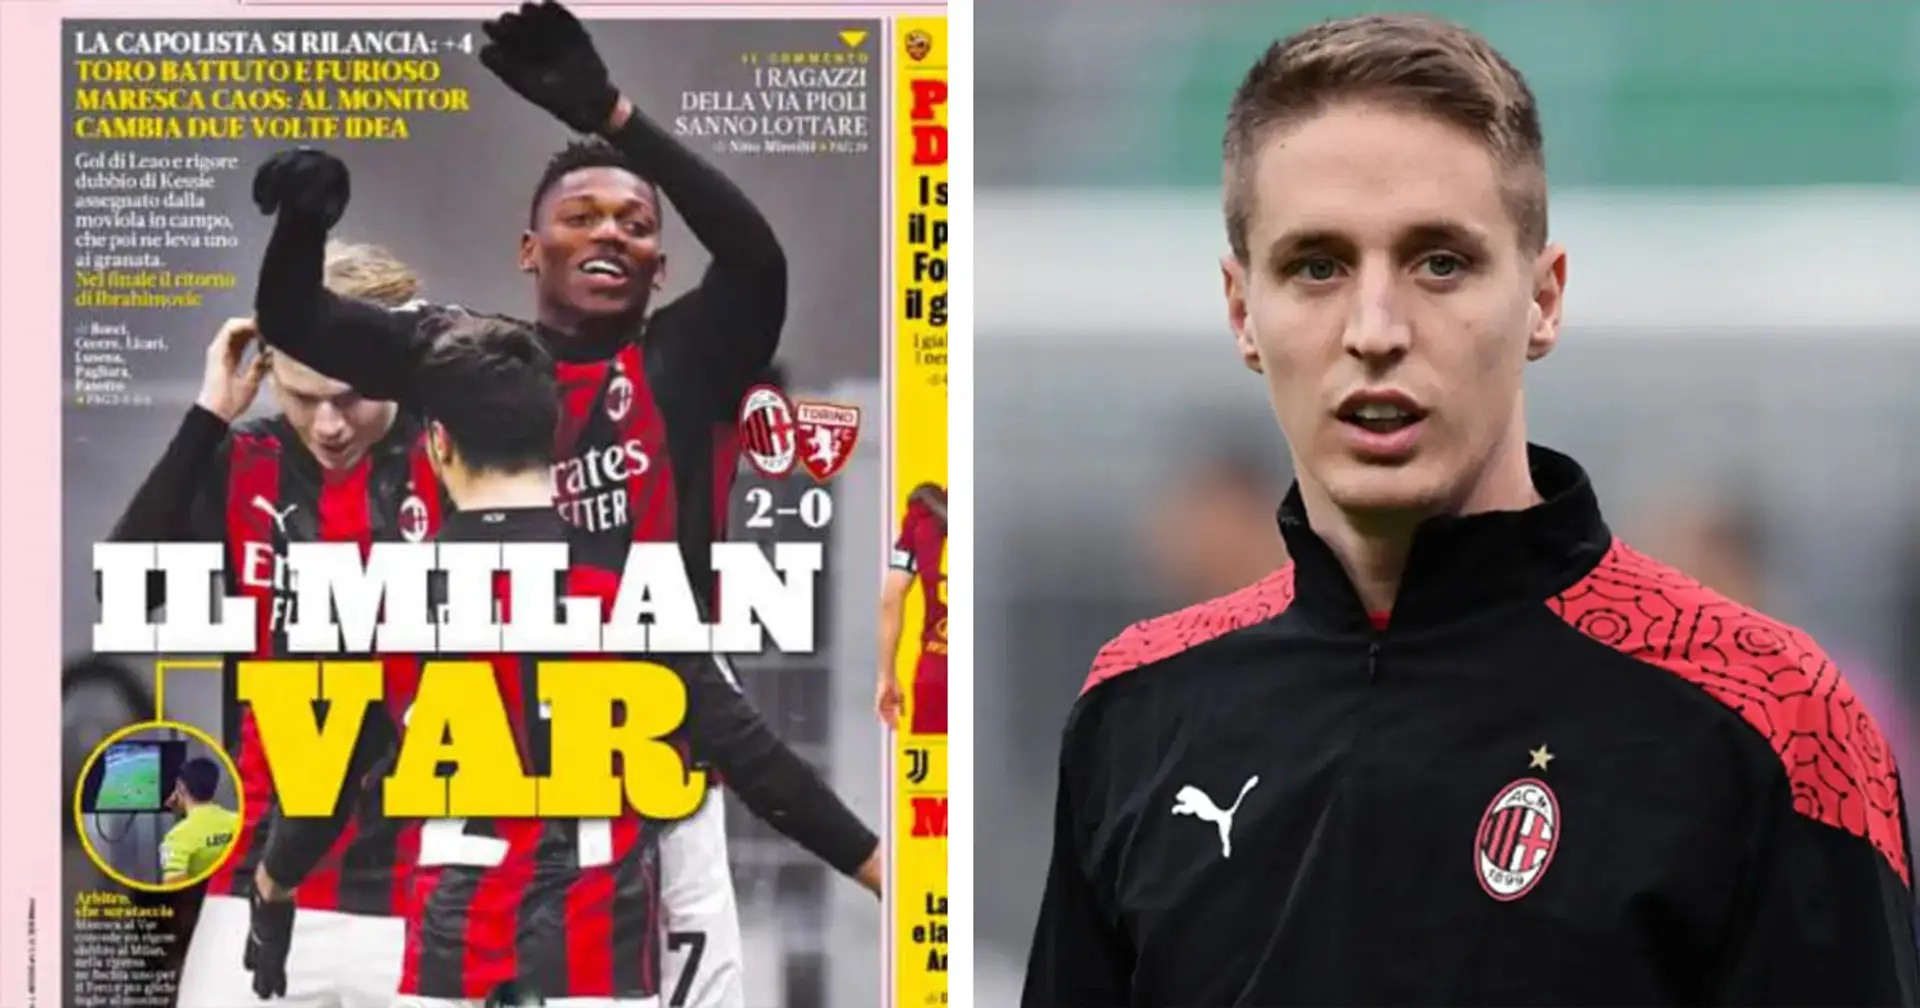 Da 'Milan VAR' della Gazzetta a Conti verso la Fiorentina: le 3 news più importanti sui Rossoneri che dovreste assolutamente leggere